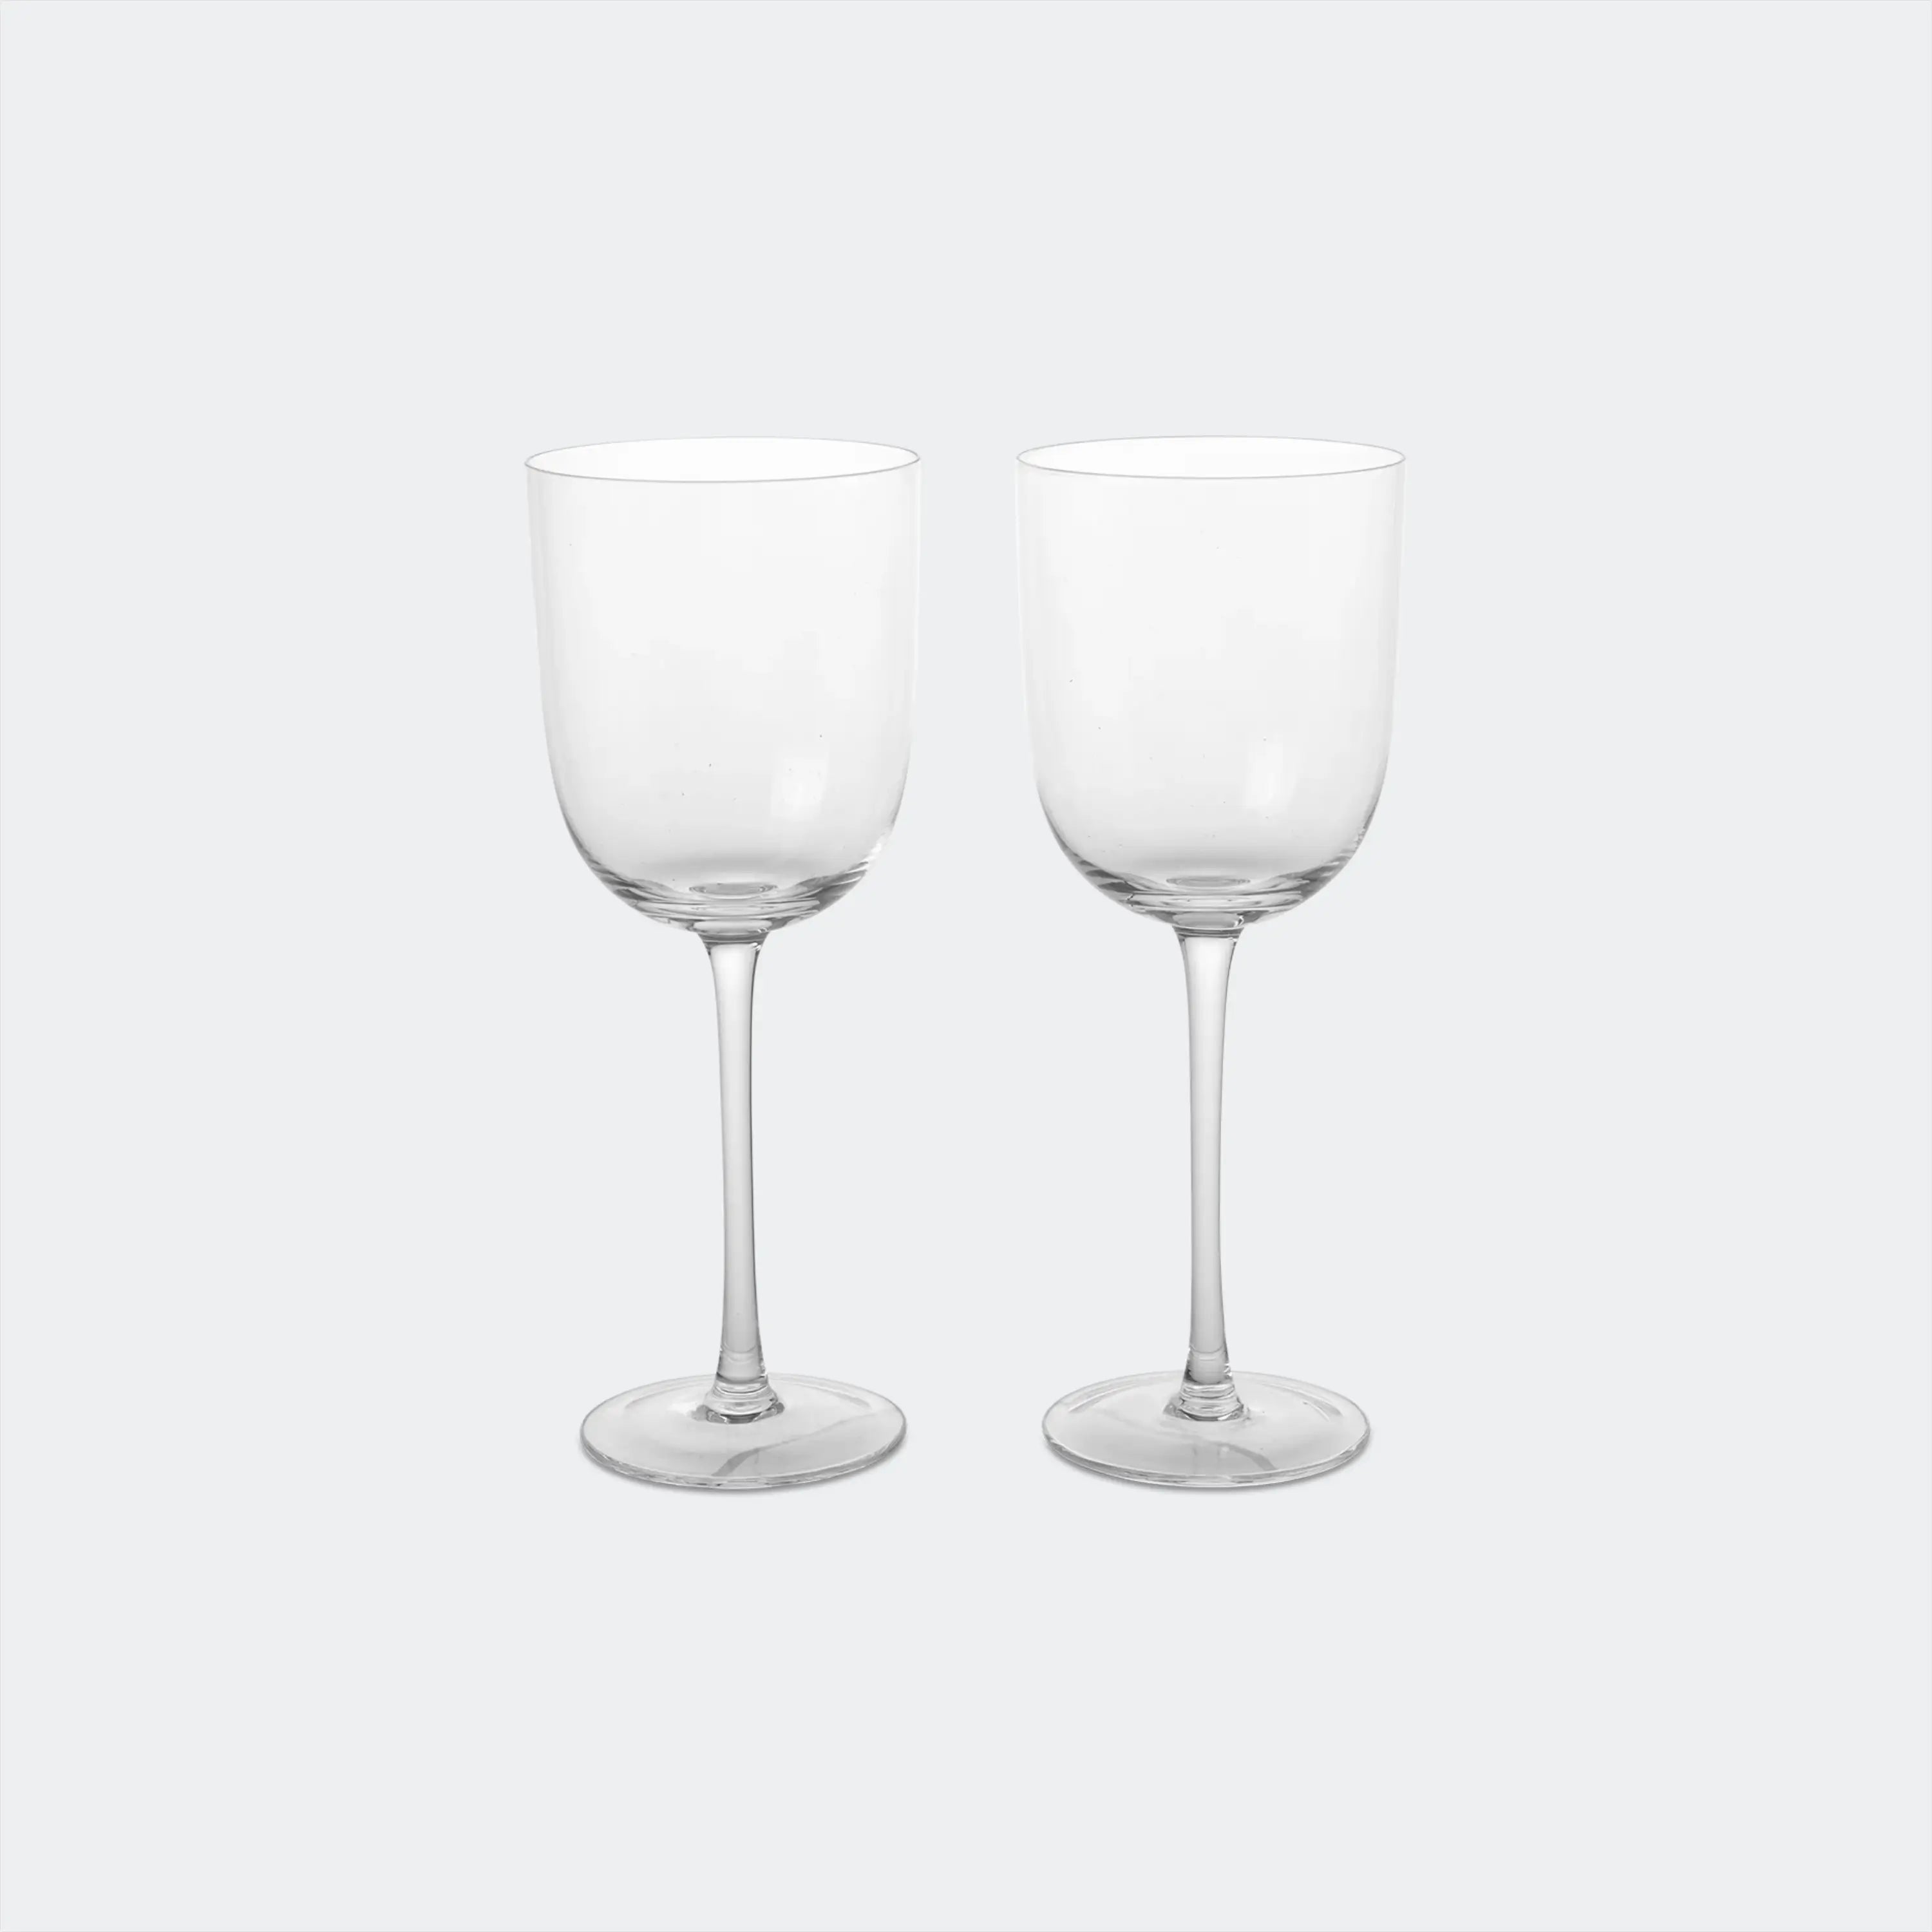 ferm LIVING Host red wine glasses, set of 2, blush